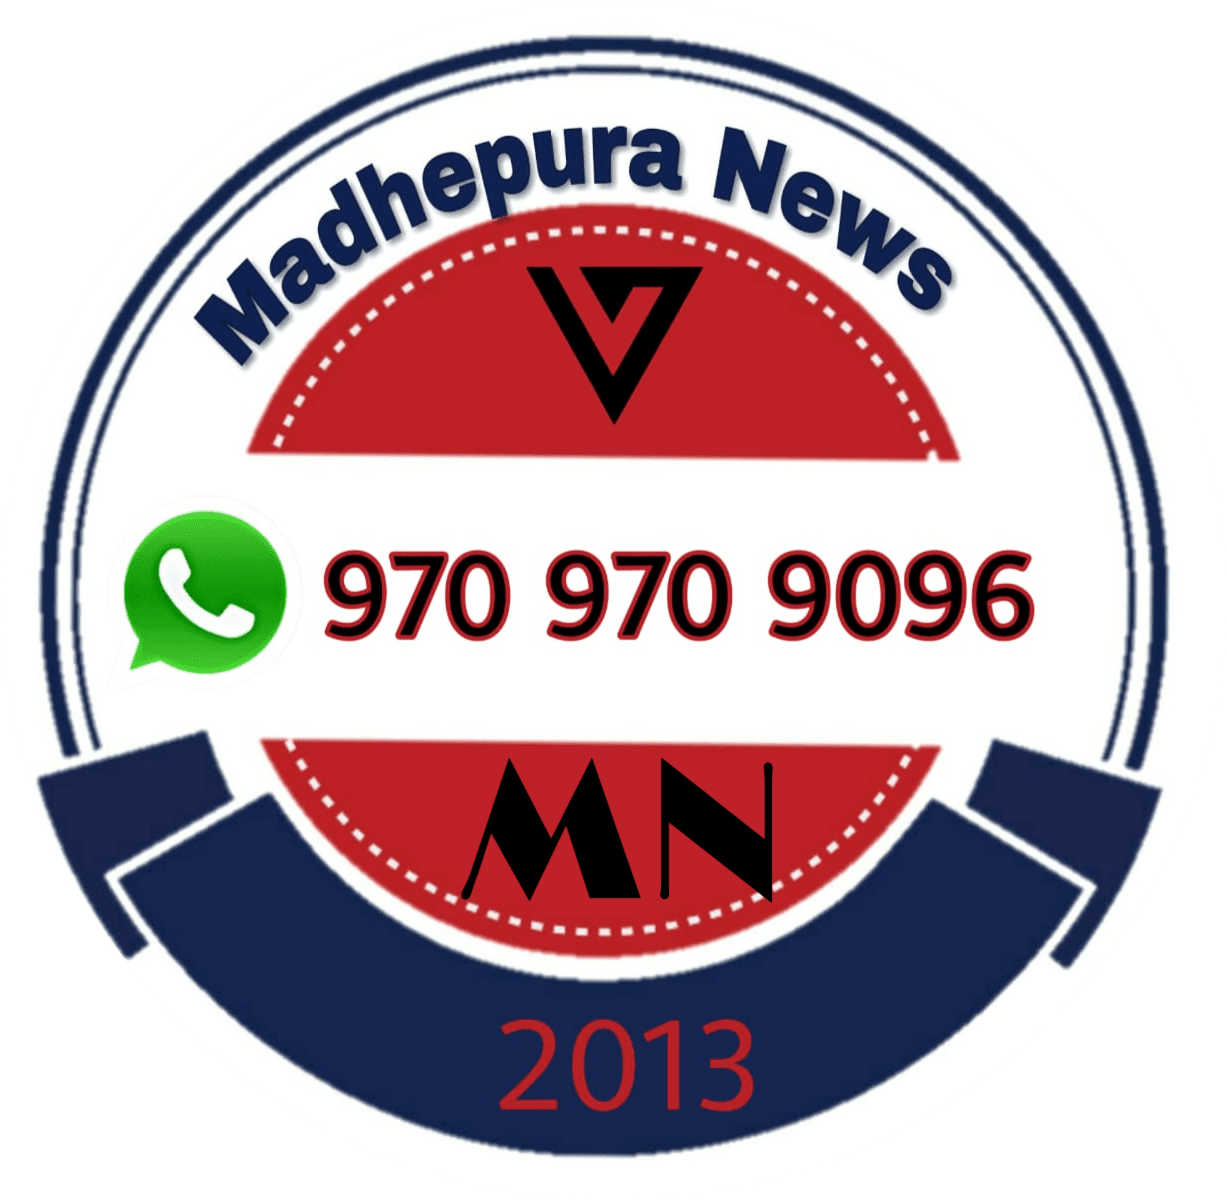 Madhepura news